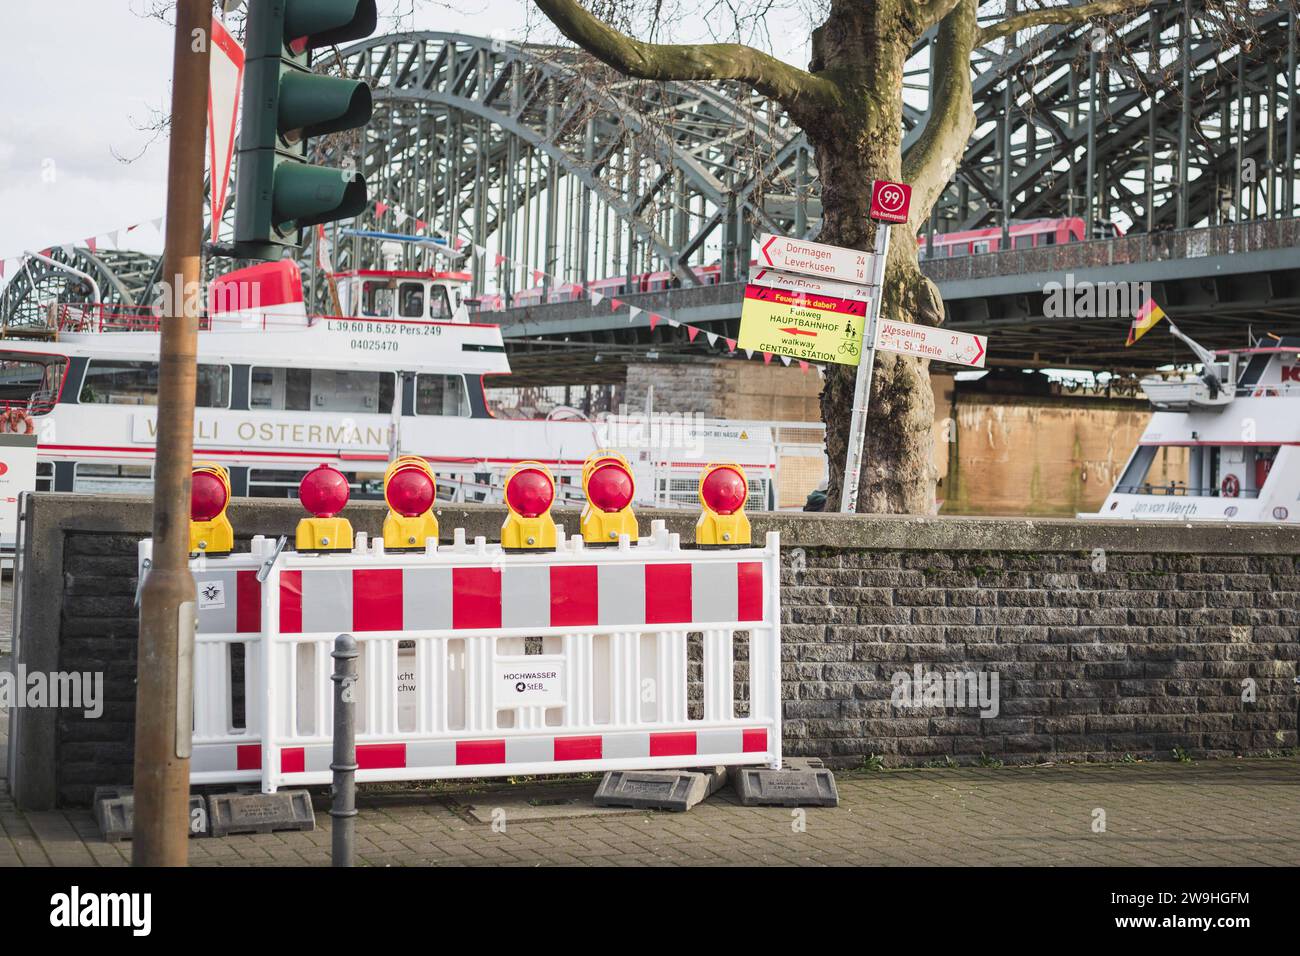 Vorbereitung zum Silvester in Köln, 28.12.2023 ein Schild auf dem stehen die Richtung zum Platz, wo Feuerwerk erlaubt ist. Auf dem Schild steht Feuerwerk dabei Fußweg zum Hauptbahnhof , Gehweg zum Hauptbahnhof . Auf dem Hintergrund sieht man Rhein. Auf dem Vordergrund steht Absperrung. Vorbereitung zum Silvester in Köln, 28.12.2023 Köln NRW Deutschland *** Vorbereitung auf Silvester in Köln, 28 12 2023 Ein Schild auf dem die Richtung zum Platz steht wo Feuerwerk erlaubt ist auf dem Schild steht Feuerwerk auf dem Weg zum Hauptbahnhof . Gehweg zum Hauptbahnhof auf dem Hinterhof Stockfoto